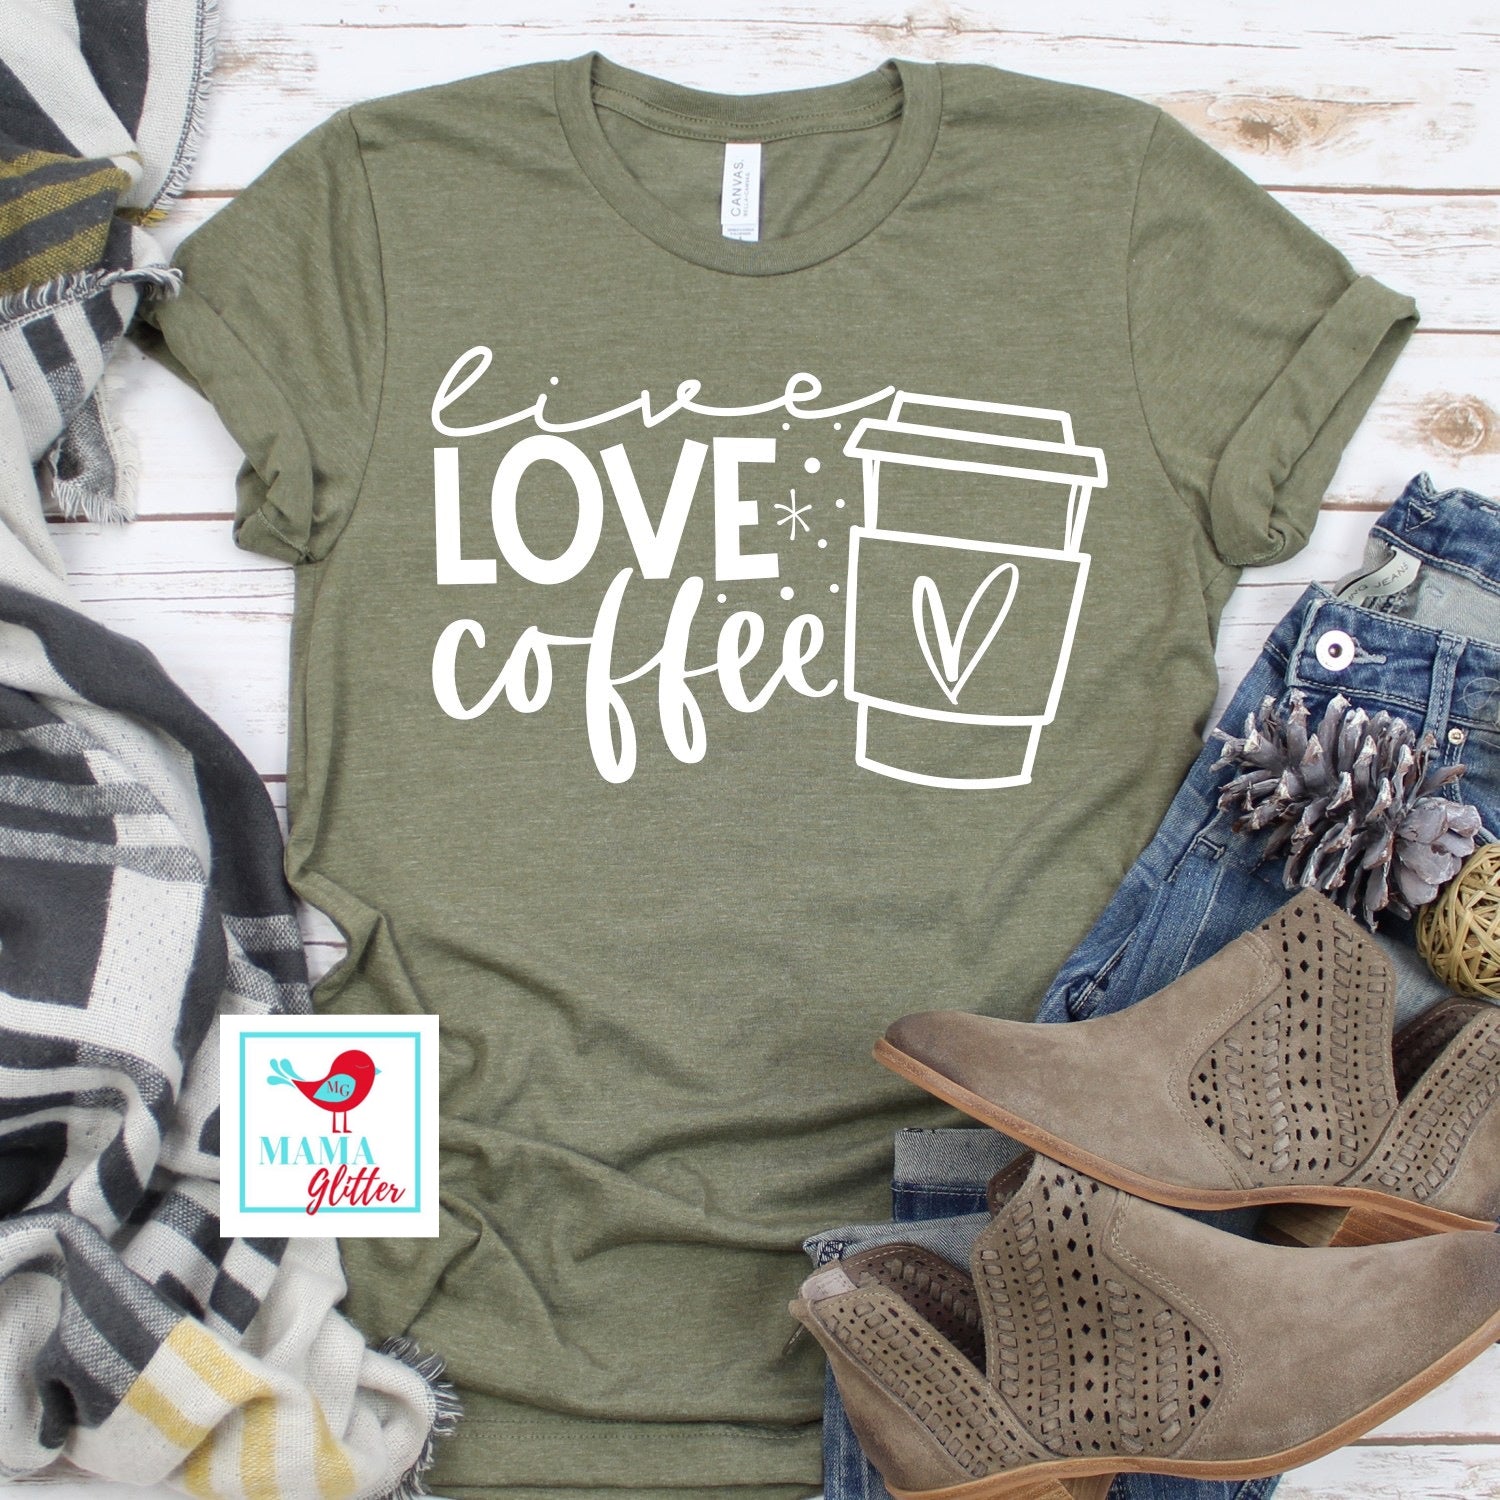 Live, Love, Coffee